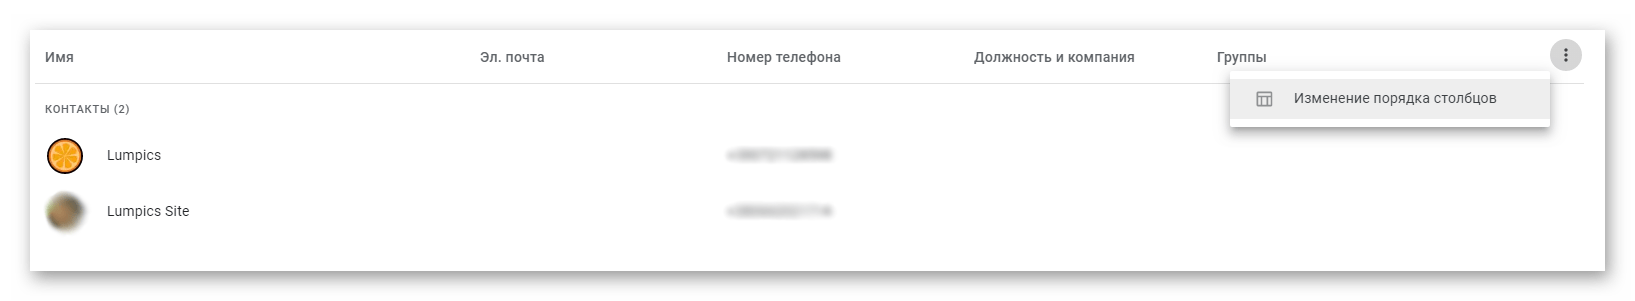 Категории информации о контактах в браузере Google Chrome